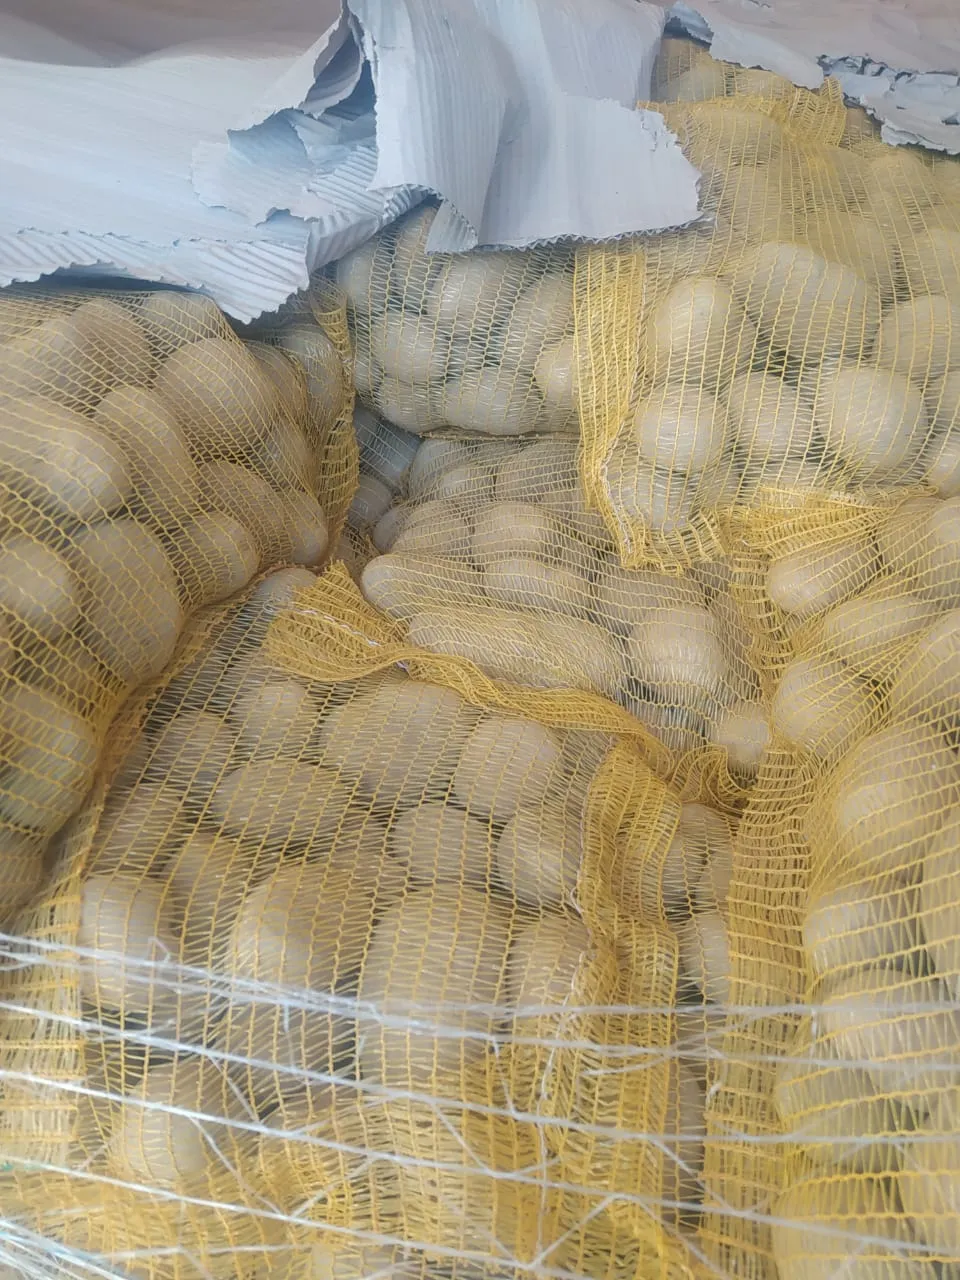 Митники конфіскували понад 2 тонни контрабандної картоплі: фото